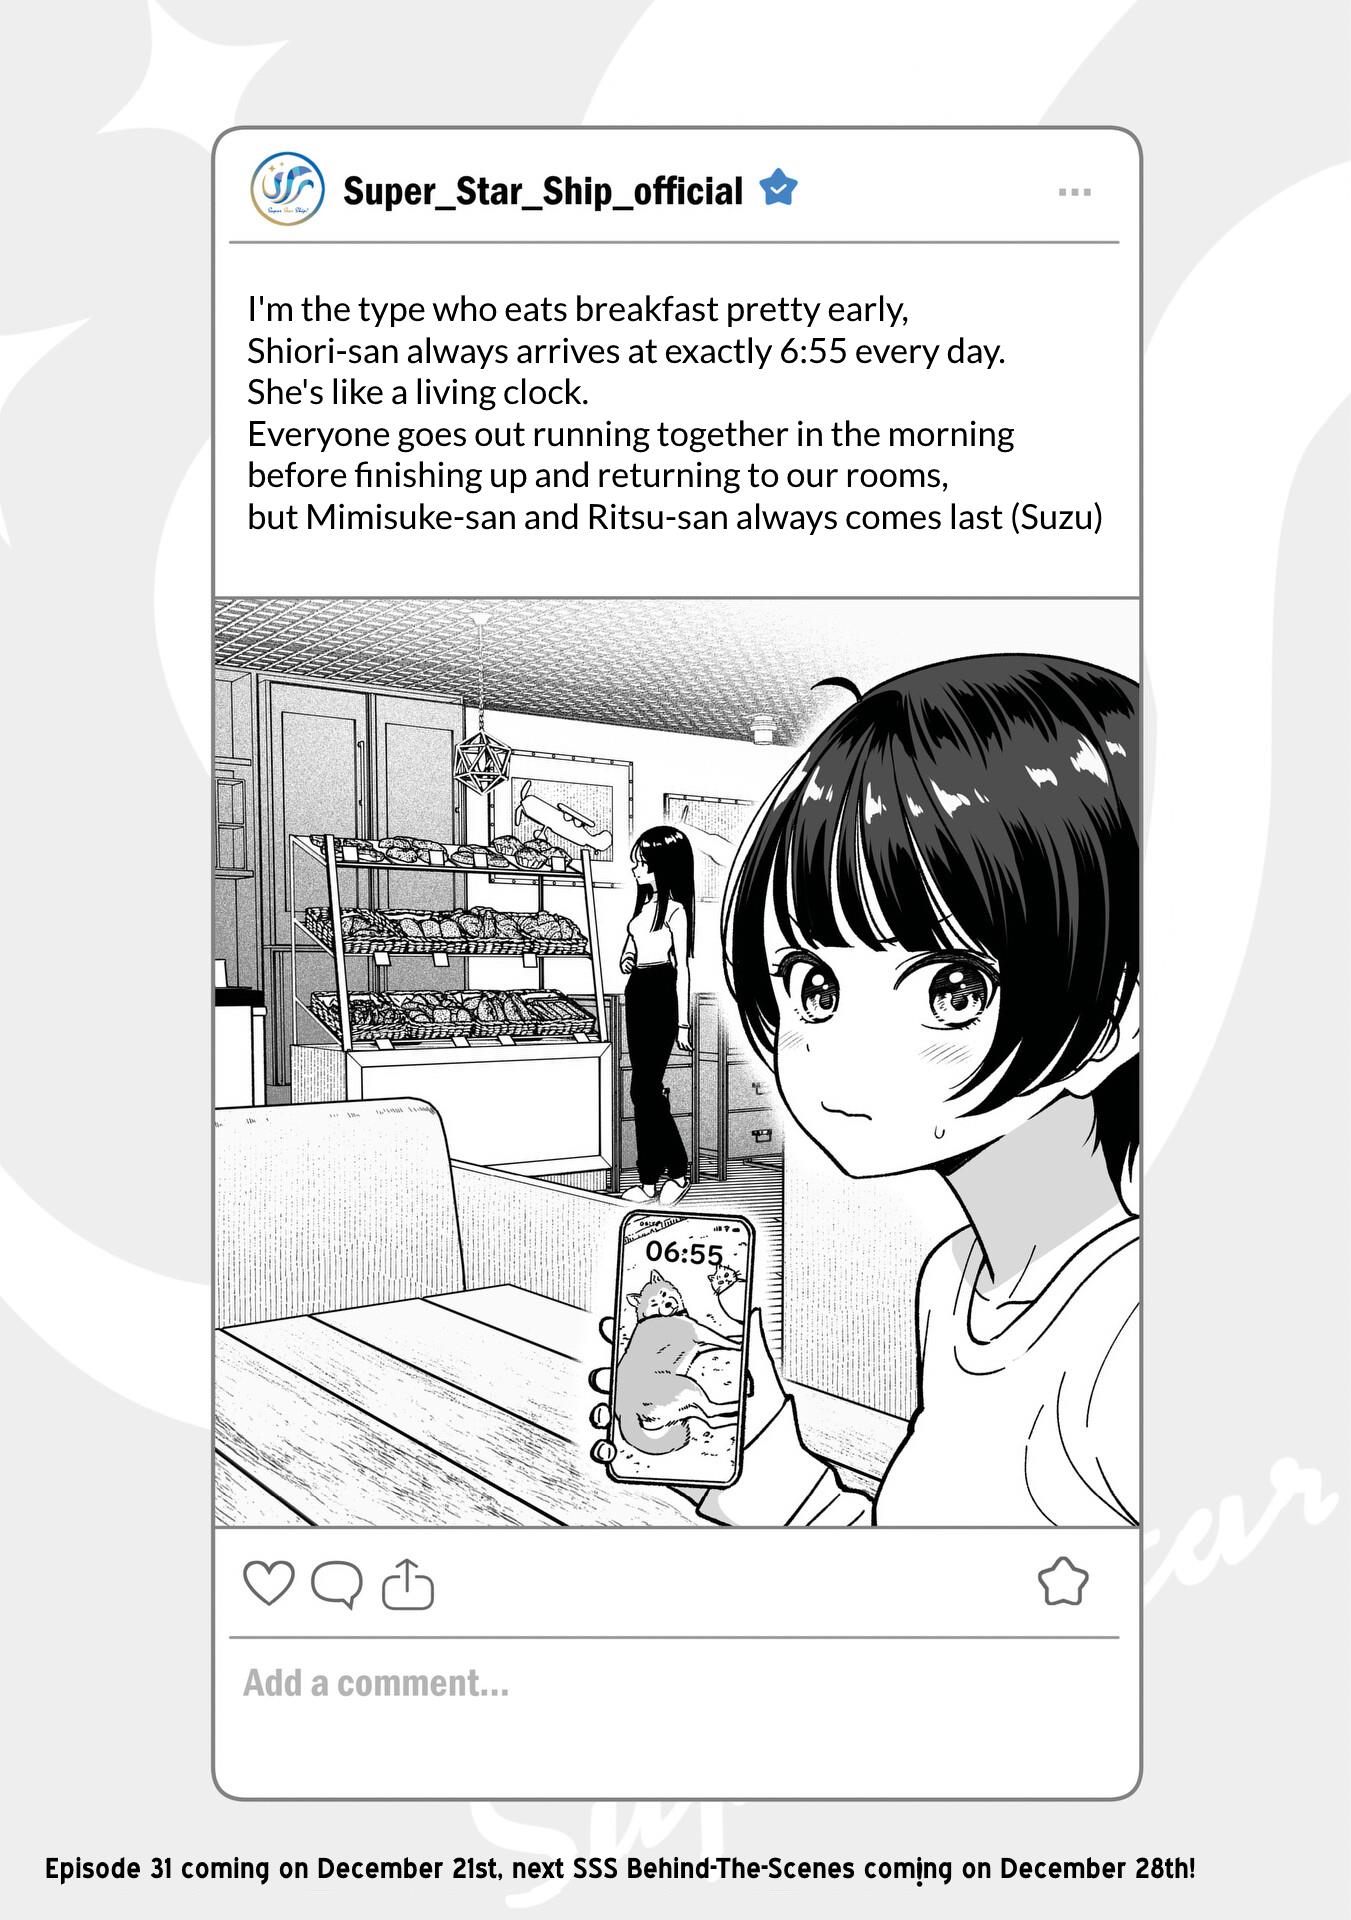 Idol×Idol Story! - Page 1